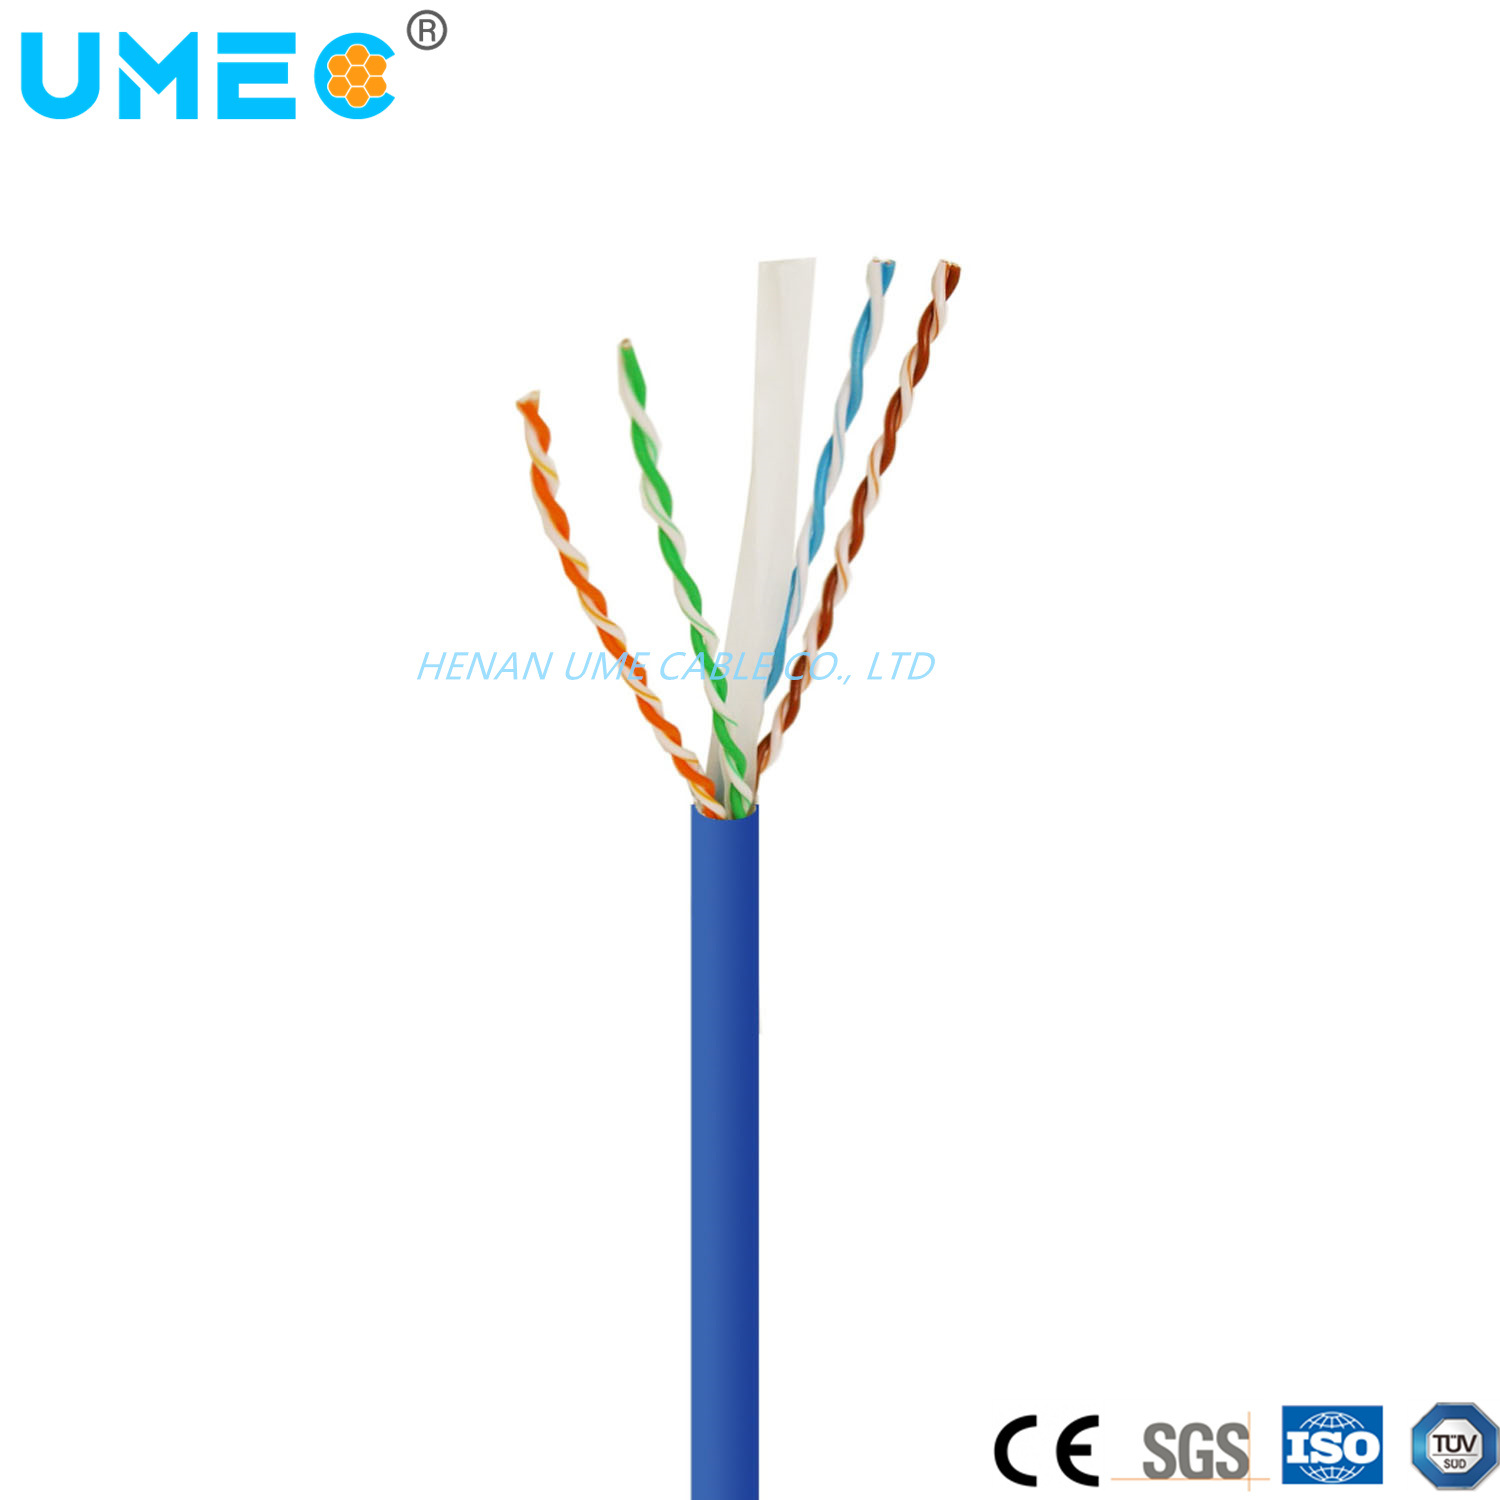 
                Câble Ethernet réseau Cat-5e à vitesse élevée OEM pour ordinateur portable de bureau Cordon de routeur en vrac 23 AWG 24 AWG 25 AWG 26 AWG
            